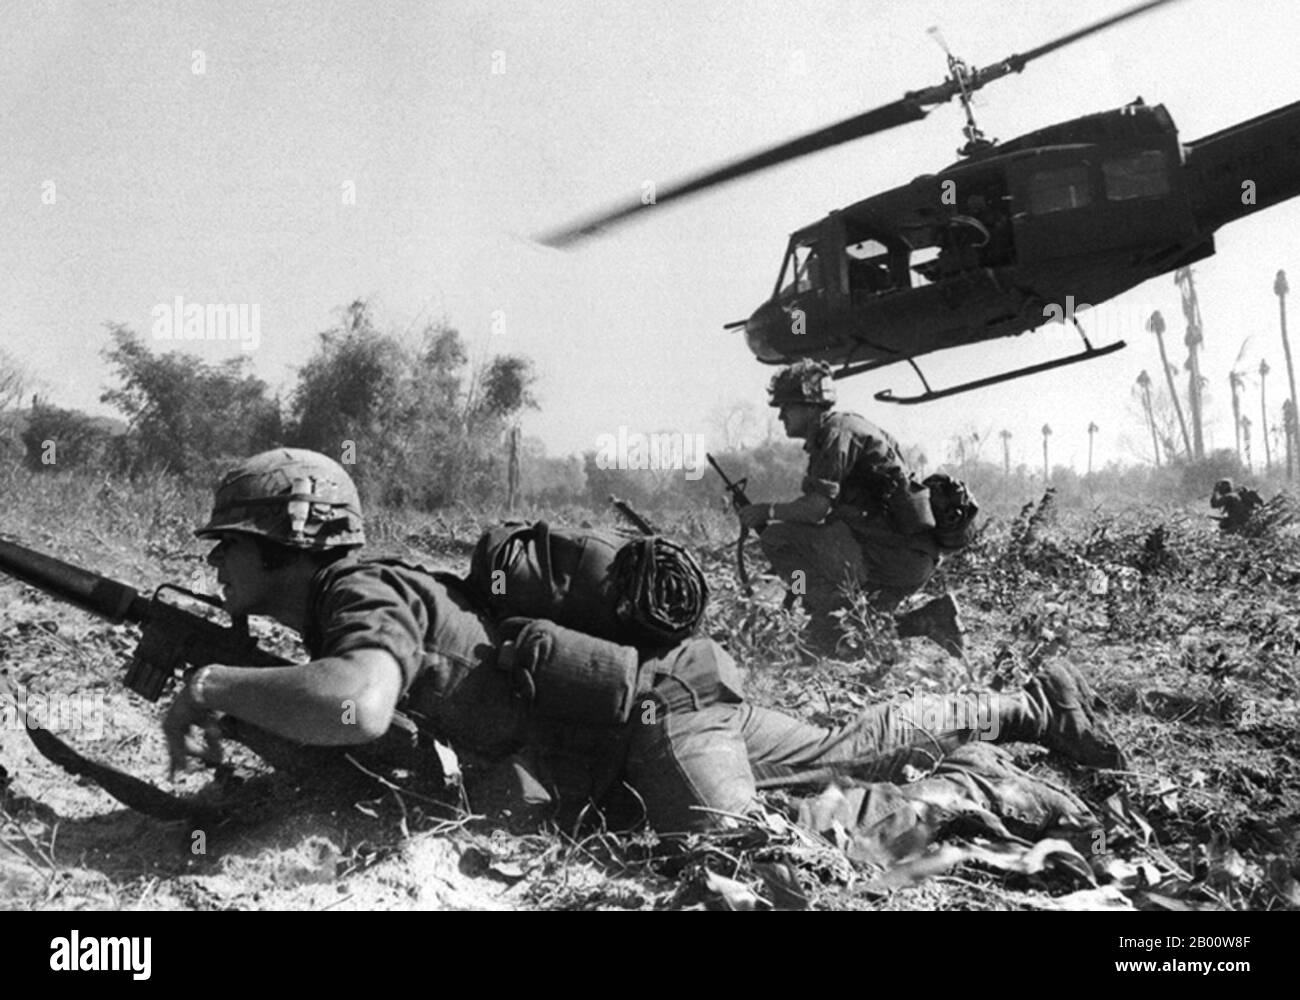 Vietnam: US-Streitkräfte unterstützt von UH-1D Huey Hubschrauber in Aktion irgendwo in Süd-Vietnam, c. 1966. Der zweite Indochinakrieg, in Amerika als Vietnamkrieg bekannt, war ein militärischer Konflikt aus der Zeit des Kalten Krieges, der in Vietnam, Laos und Kambodscha vom 1. November 1955 bis zum Fall von Saigon am 30. April 1975 stattfand. Dieser Krieg folgte dem ersten Indochina-Krieg und wurde zwischen Nordvietnam, unterstützt von seinen kommunistischen Verbündeten, und der Regierung von Südvietnam, unterstützt von den USA und anderen antikommunistischen Nationen, geführt. Stockfoto